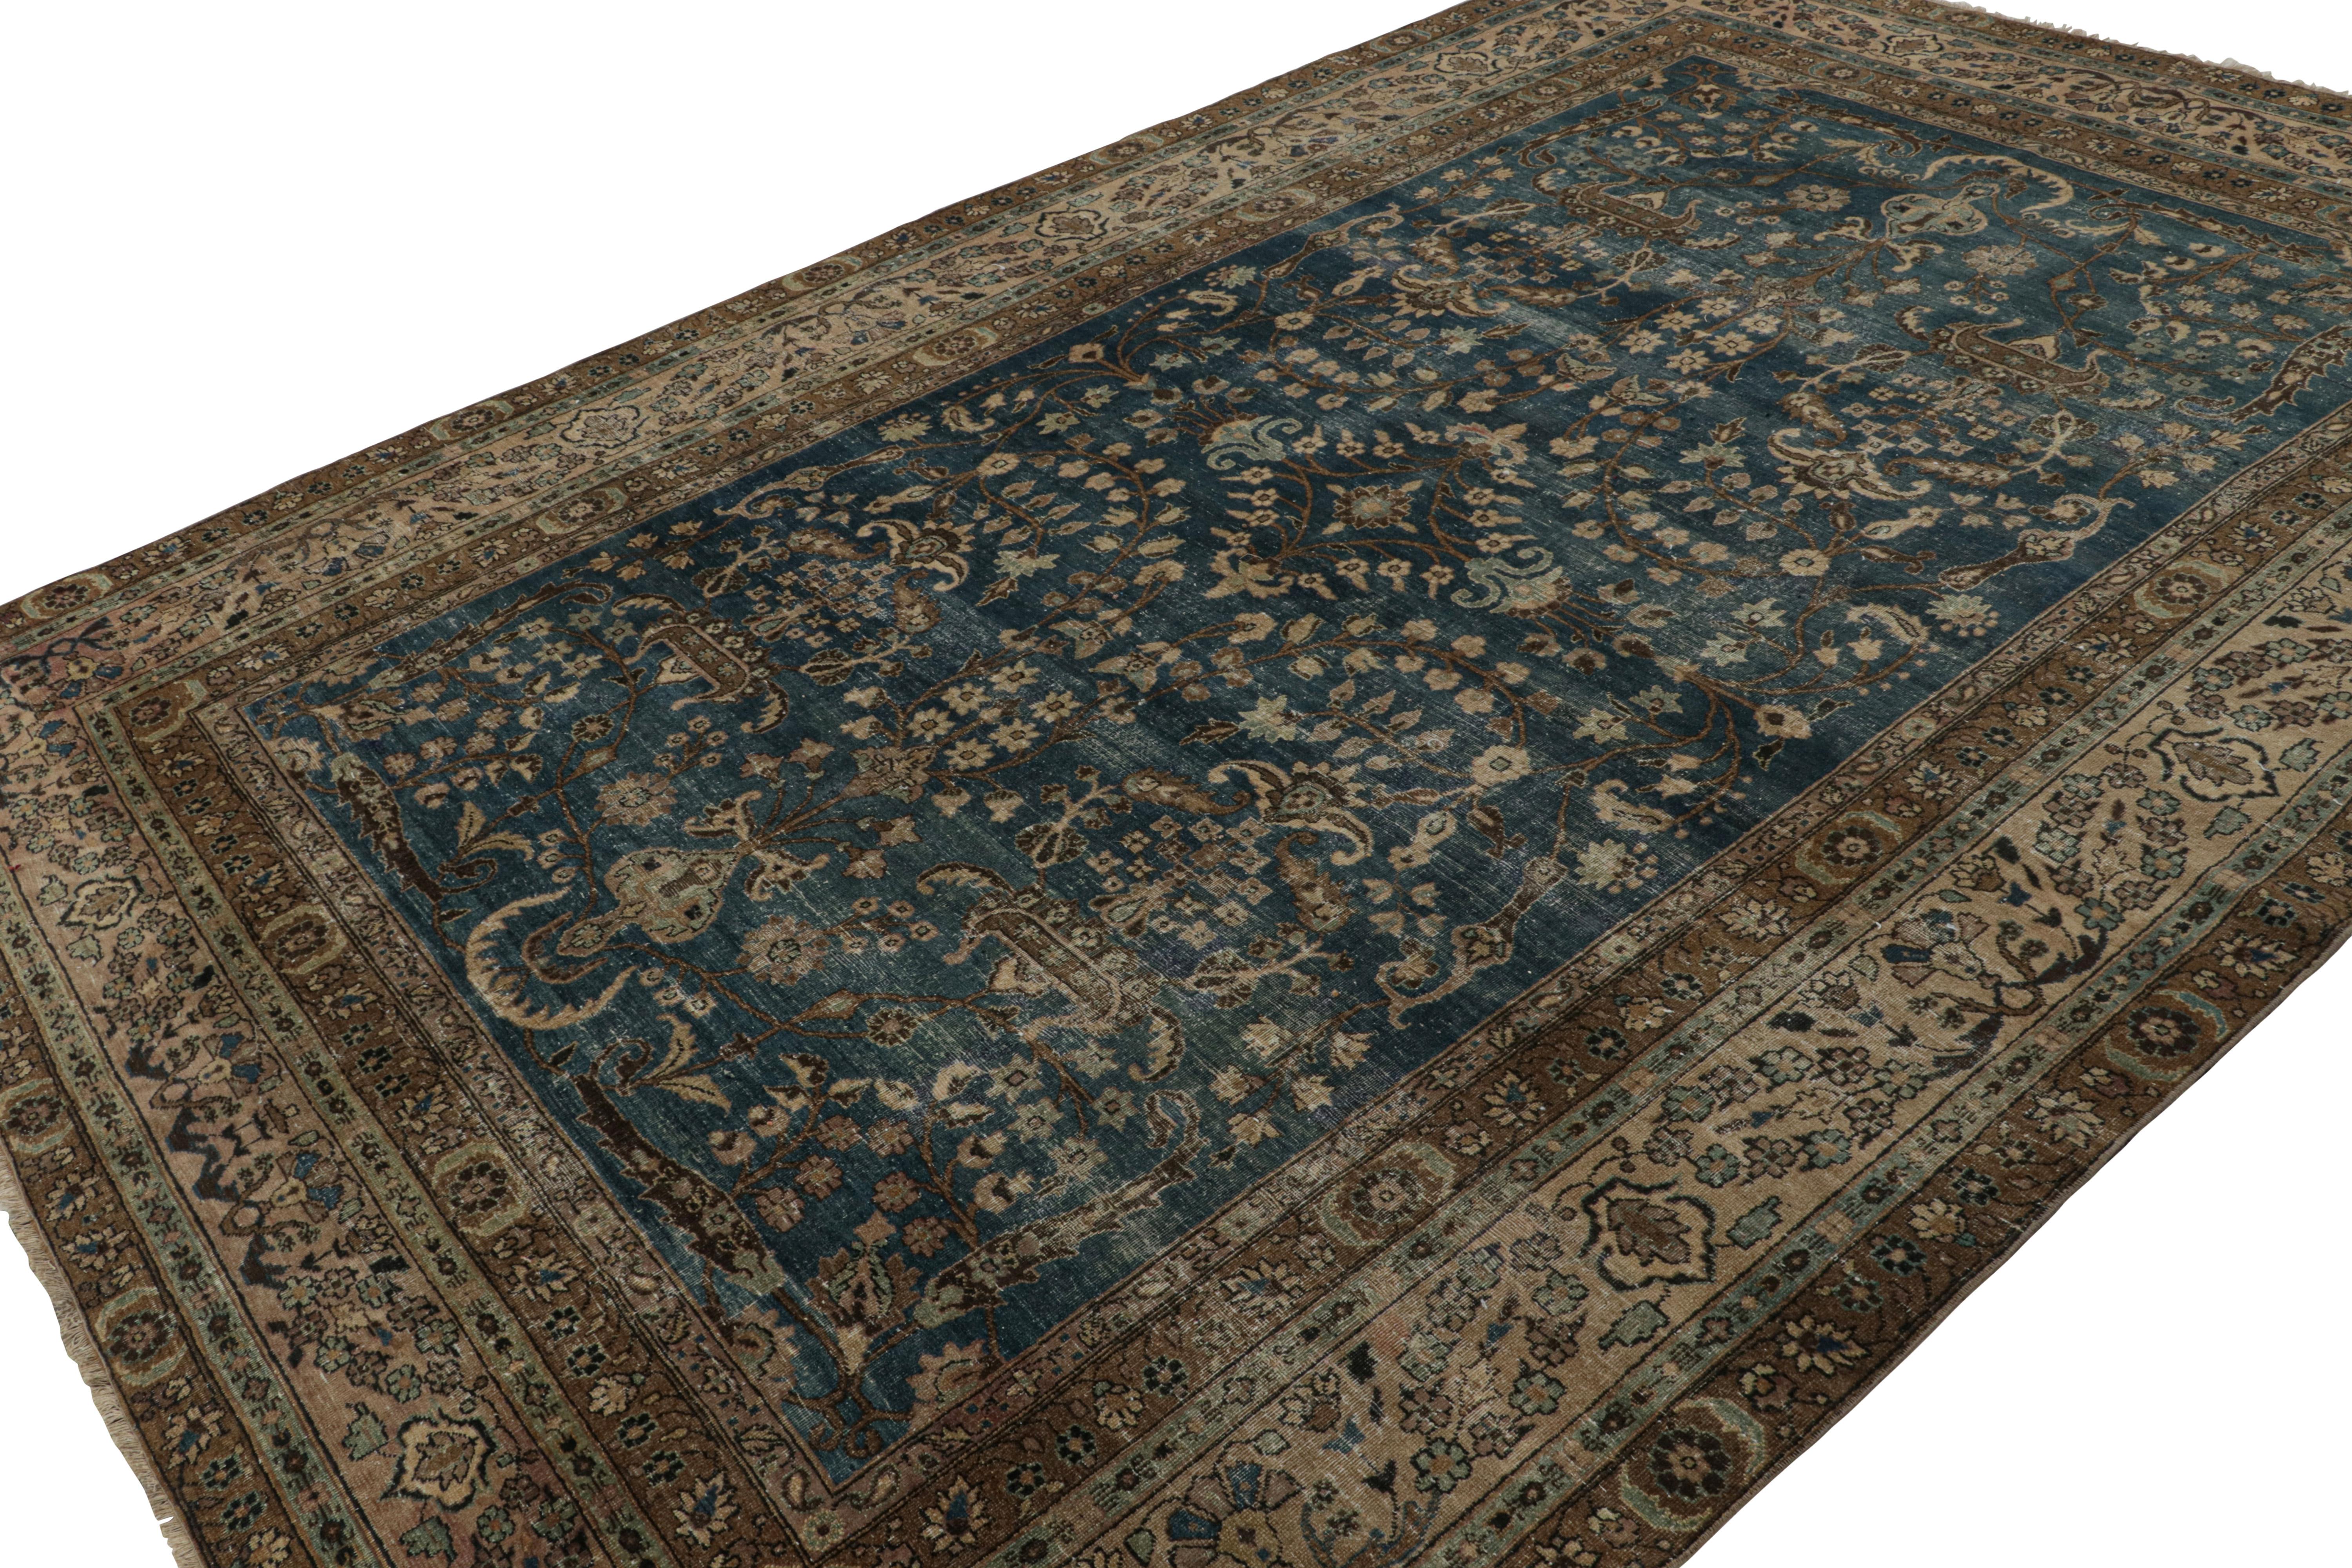 Dieser aus Wolle handgeknüpfte antike persische Doroksh-Teppich in der Größe 8x12 (ca. 1920-1930) weist mit seinen floralen Mustern eine subtile europäische Sensibilität auf, die fast an die eines Kashan und anderer Provinzen erinnert, was ihn für